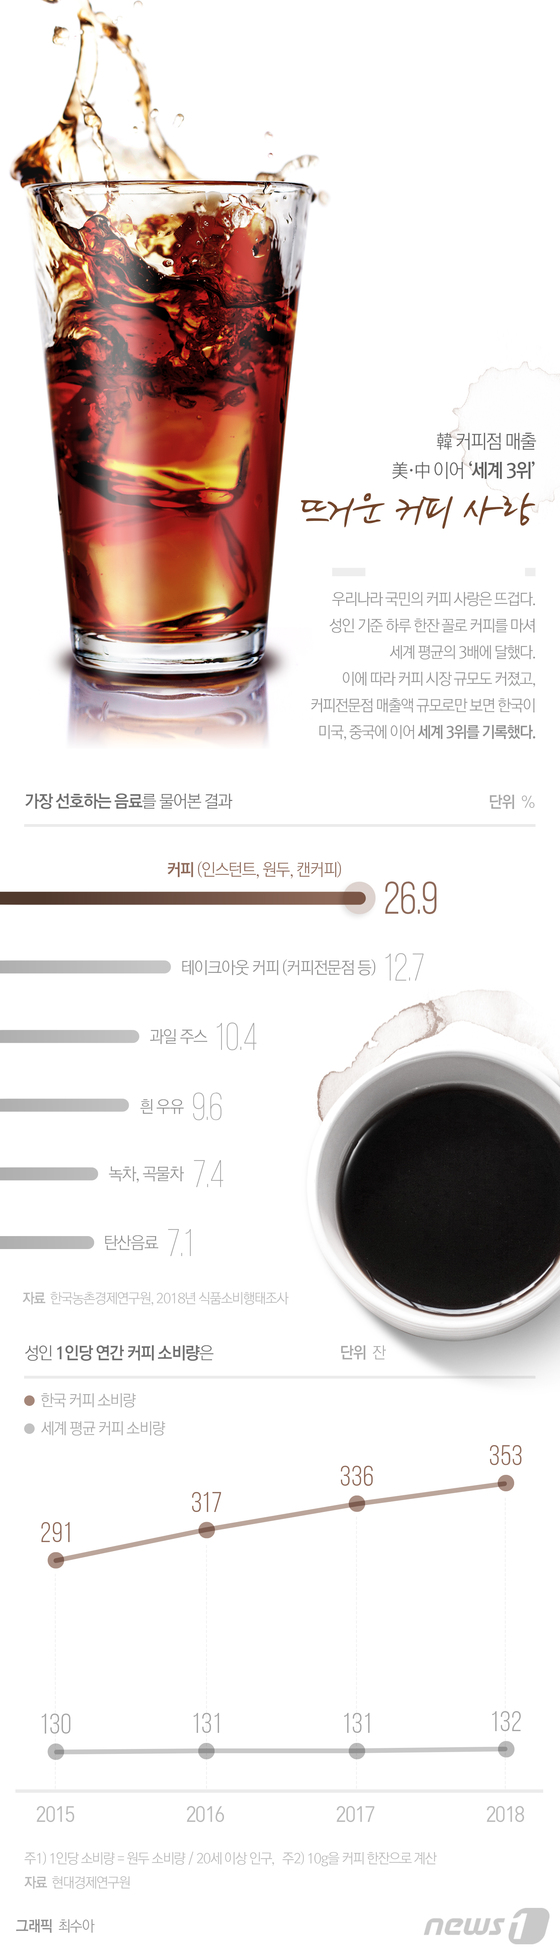 [그래픽뉴스] 韓 커피점 매출 \'세계 3위\'…뜨거운 커피 사랑